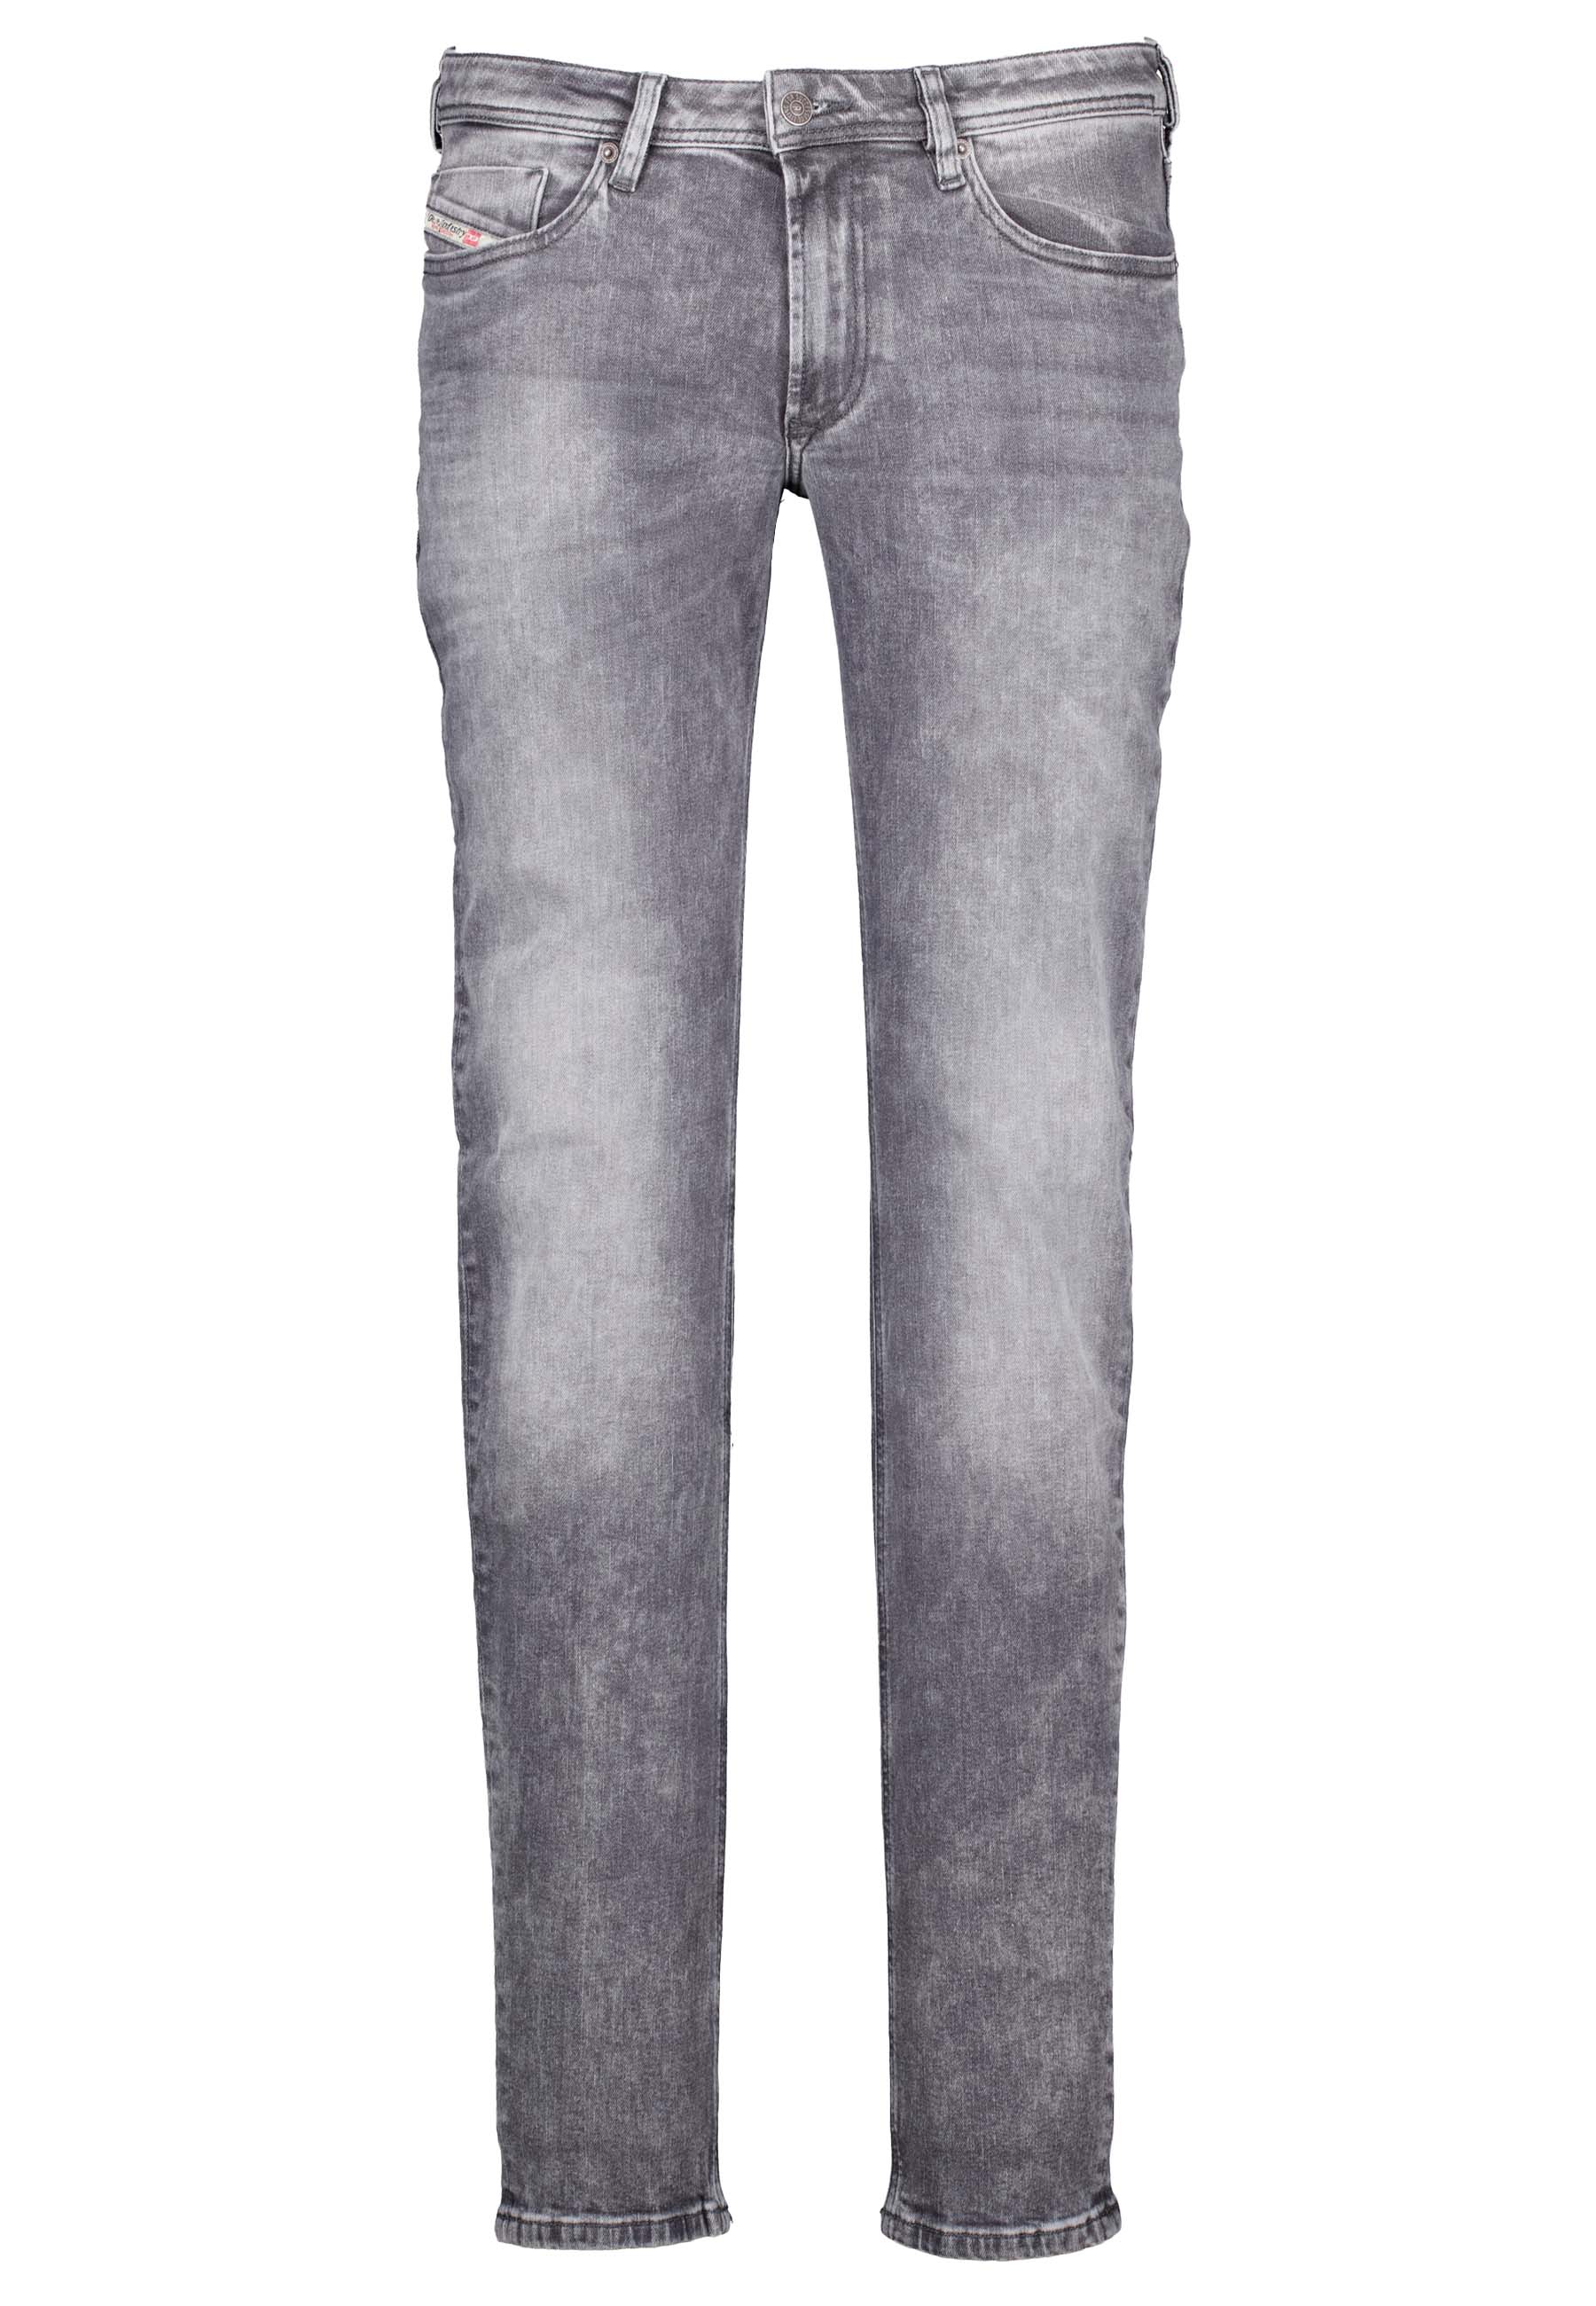 Diesel jeans grijs Heren maat 32/34